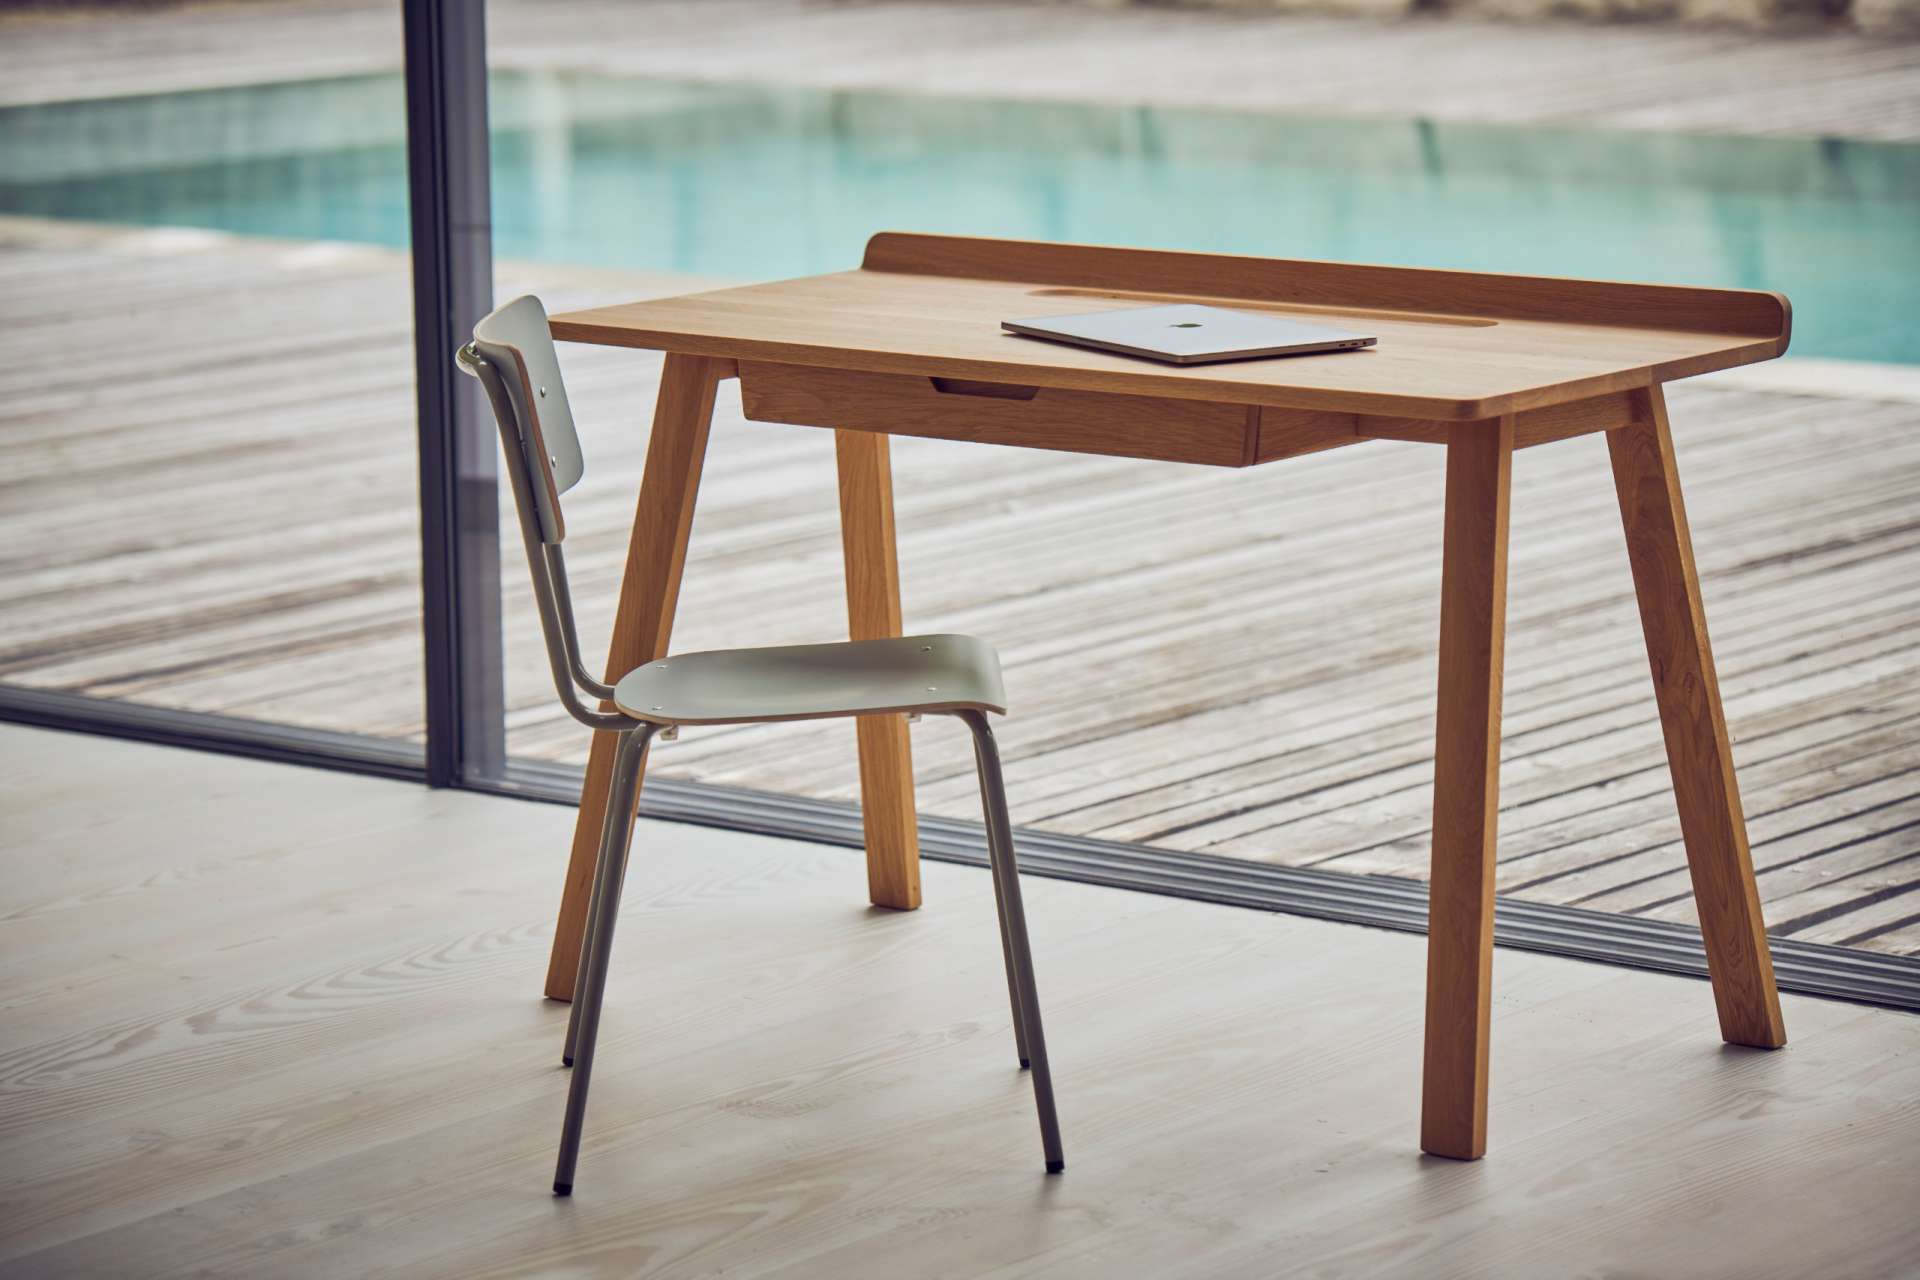 Der Schreibtisch Nara in einem skandinavischen Design wurde aus Eichenholz hergestellt. Designet wurde der Tisch von der Marke Jan Kurtz. Der Tisch verfügt über eine Schublade für zusätzlichen Stauraum.